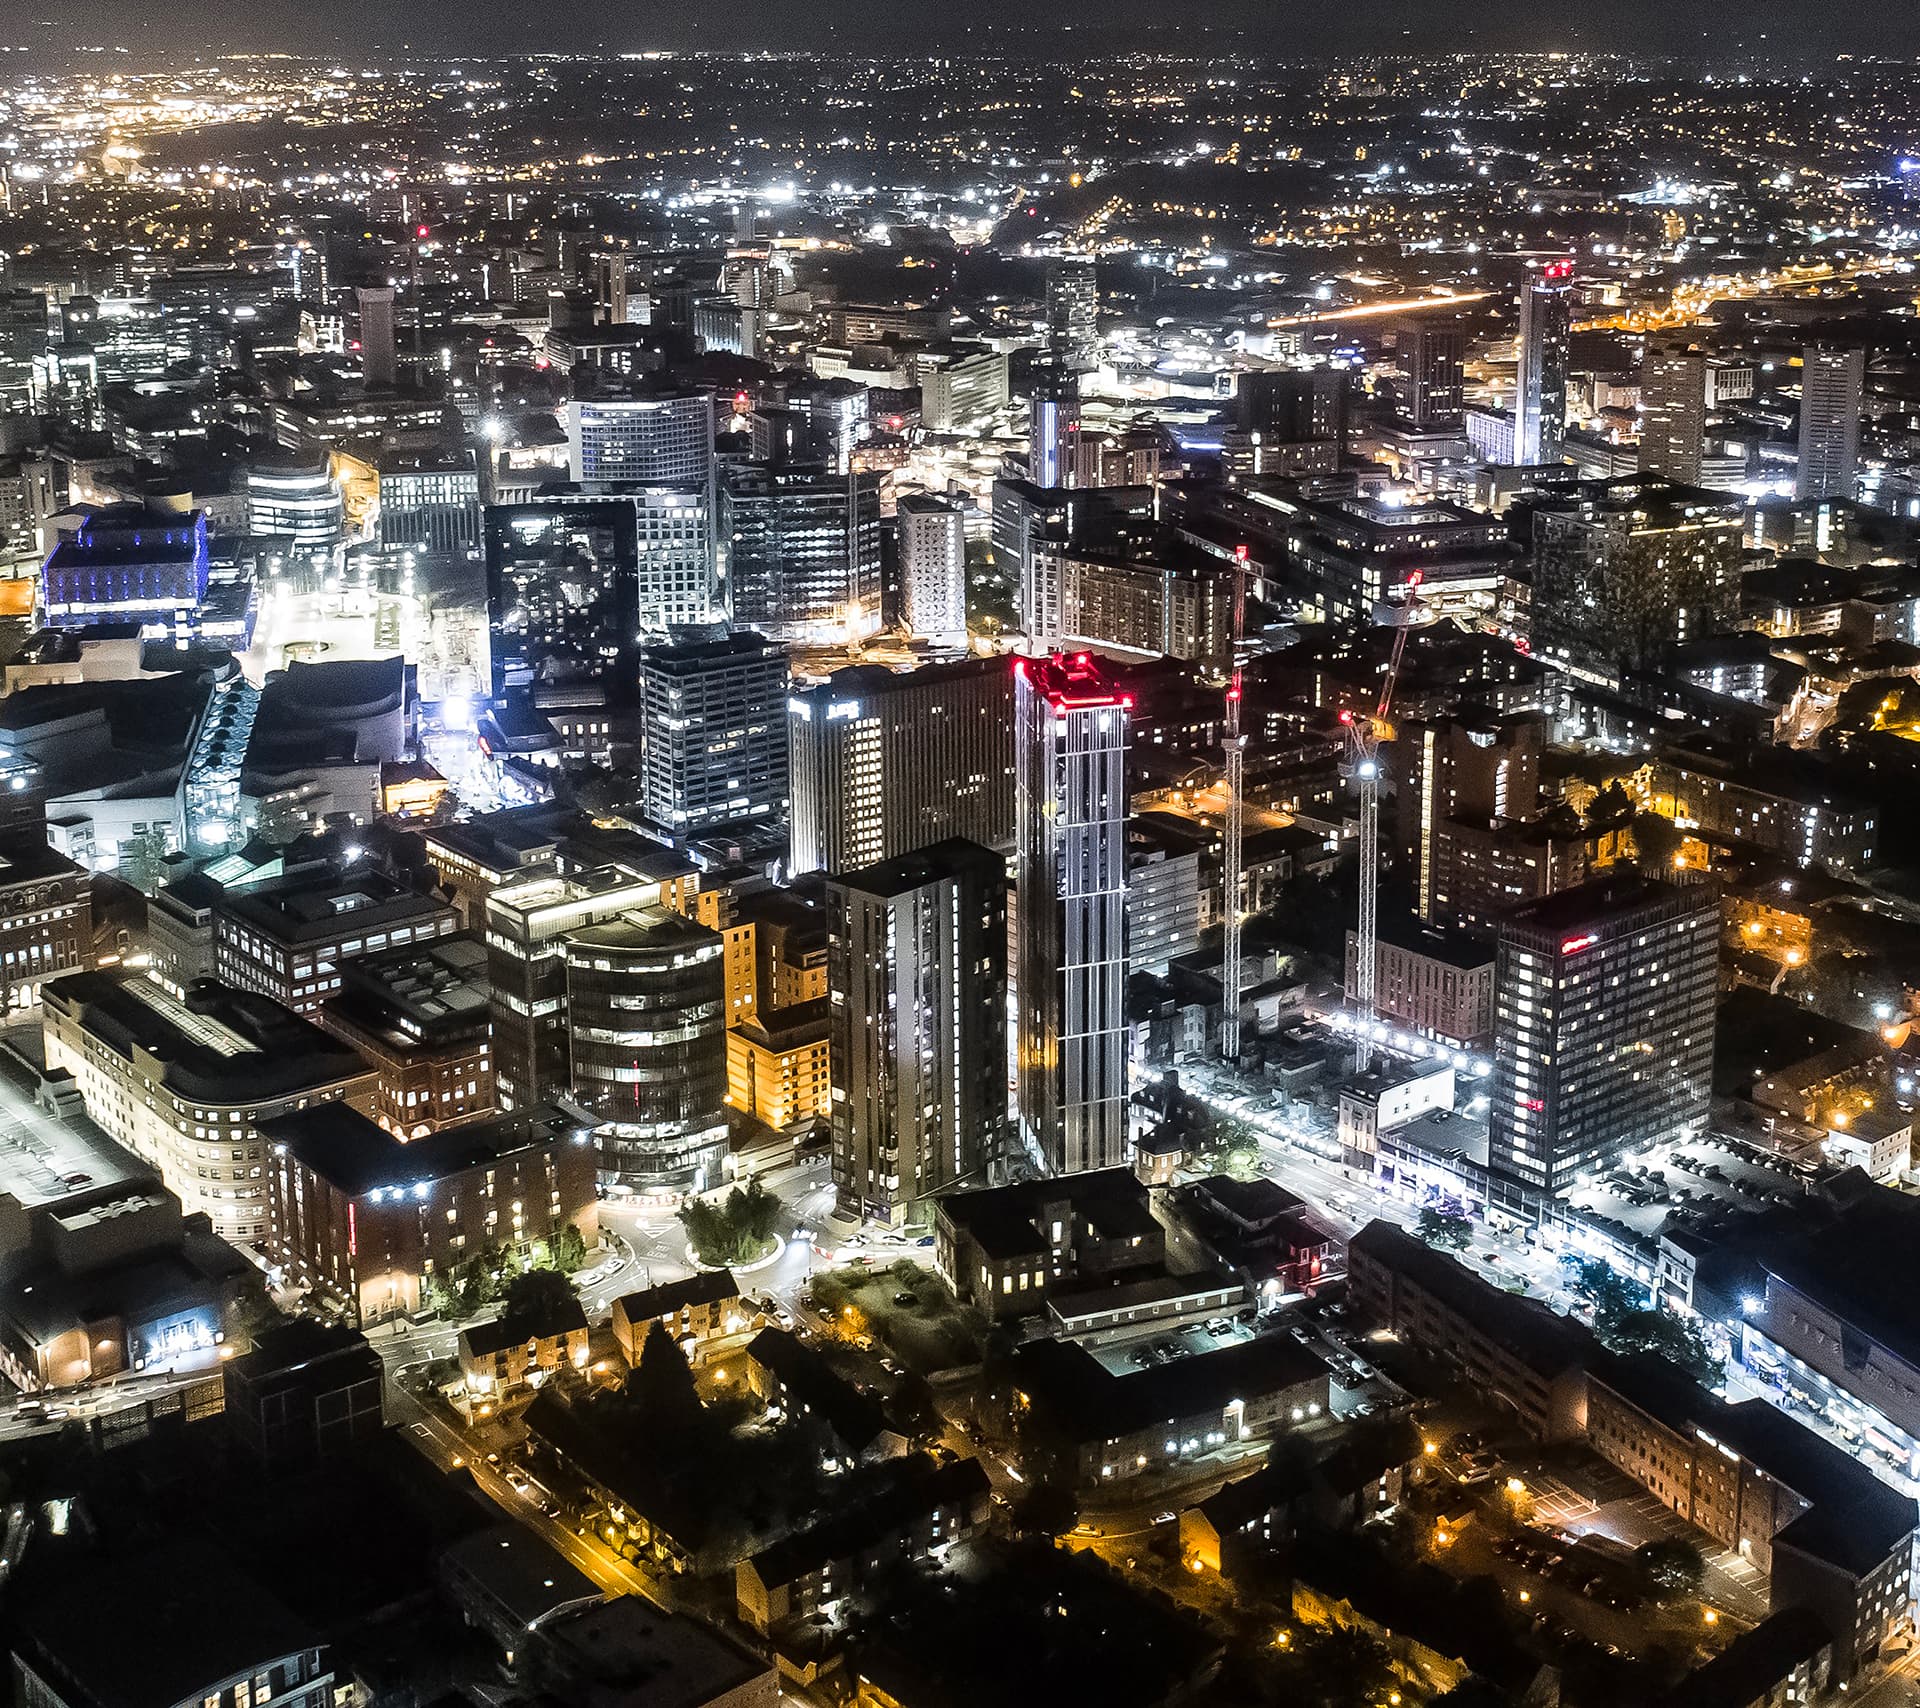 Aerial of Birmingham City Centre at night.